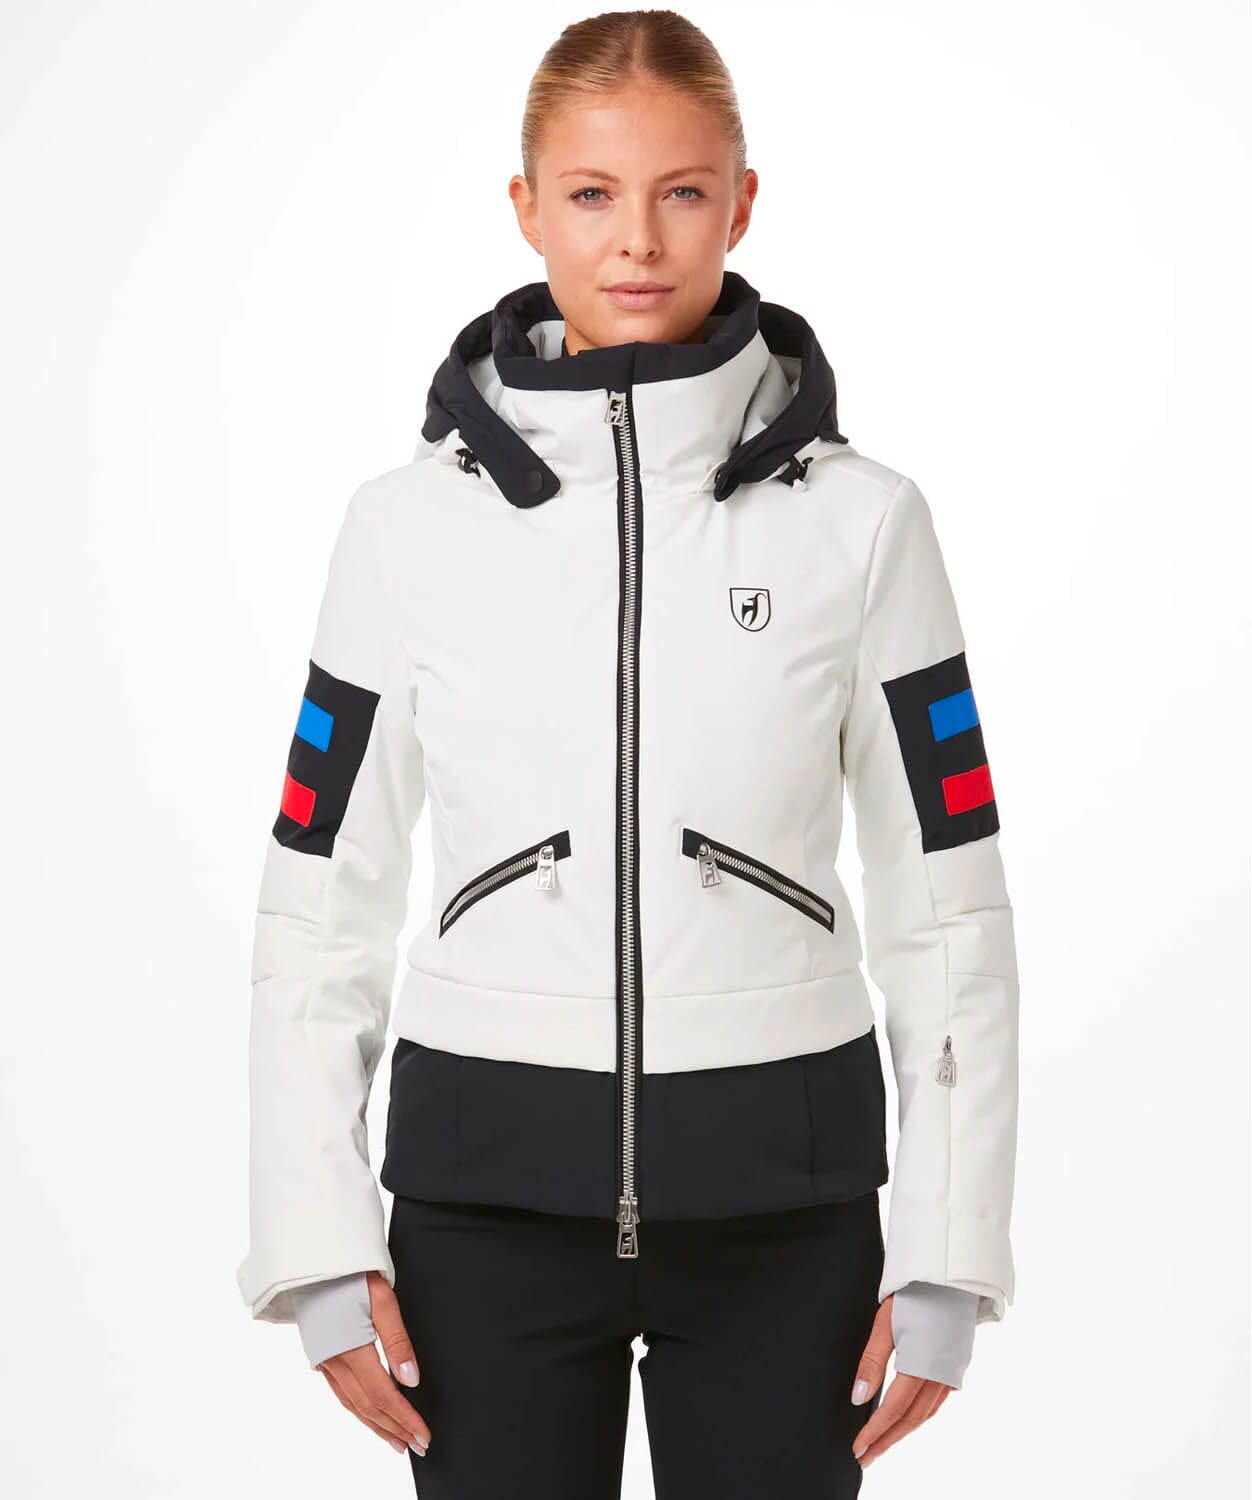 Women's Malou Ski Jacket Ski Jackets Toni Sailer Bright White 34/XS 